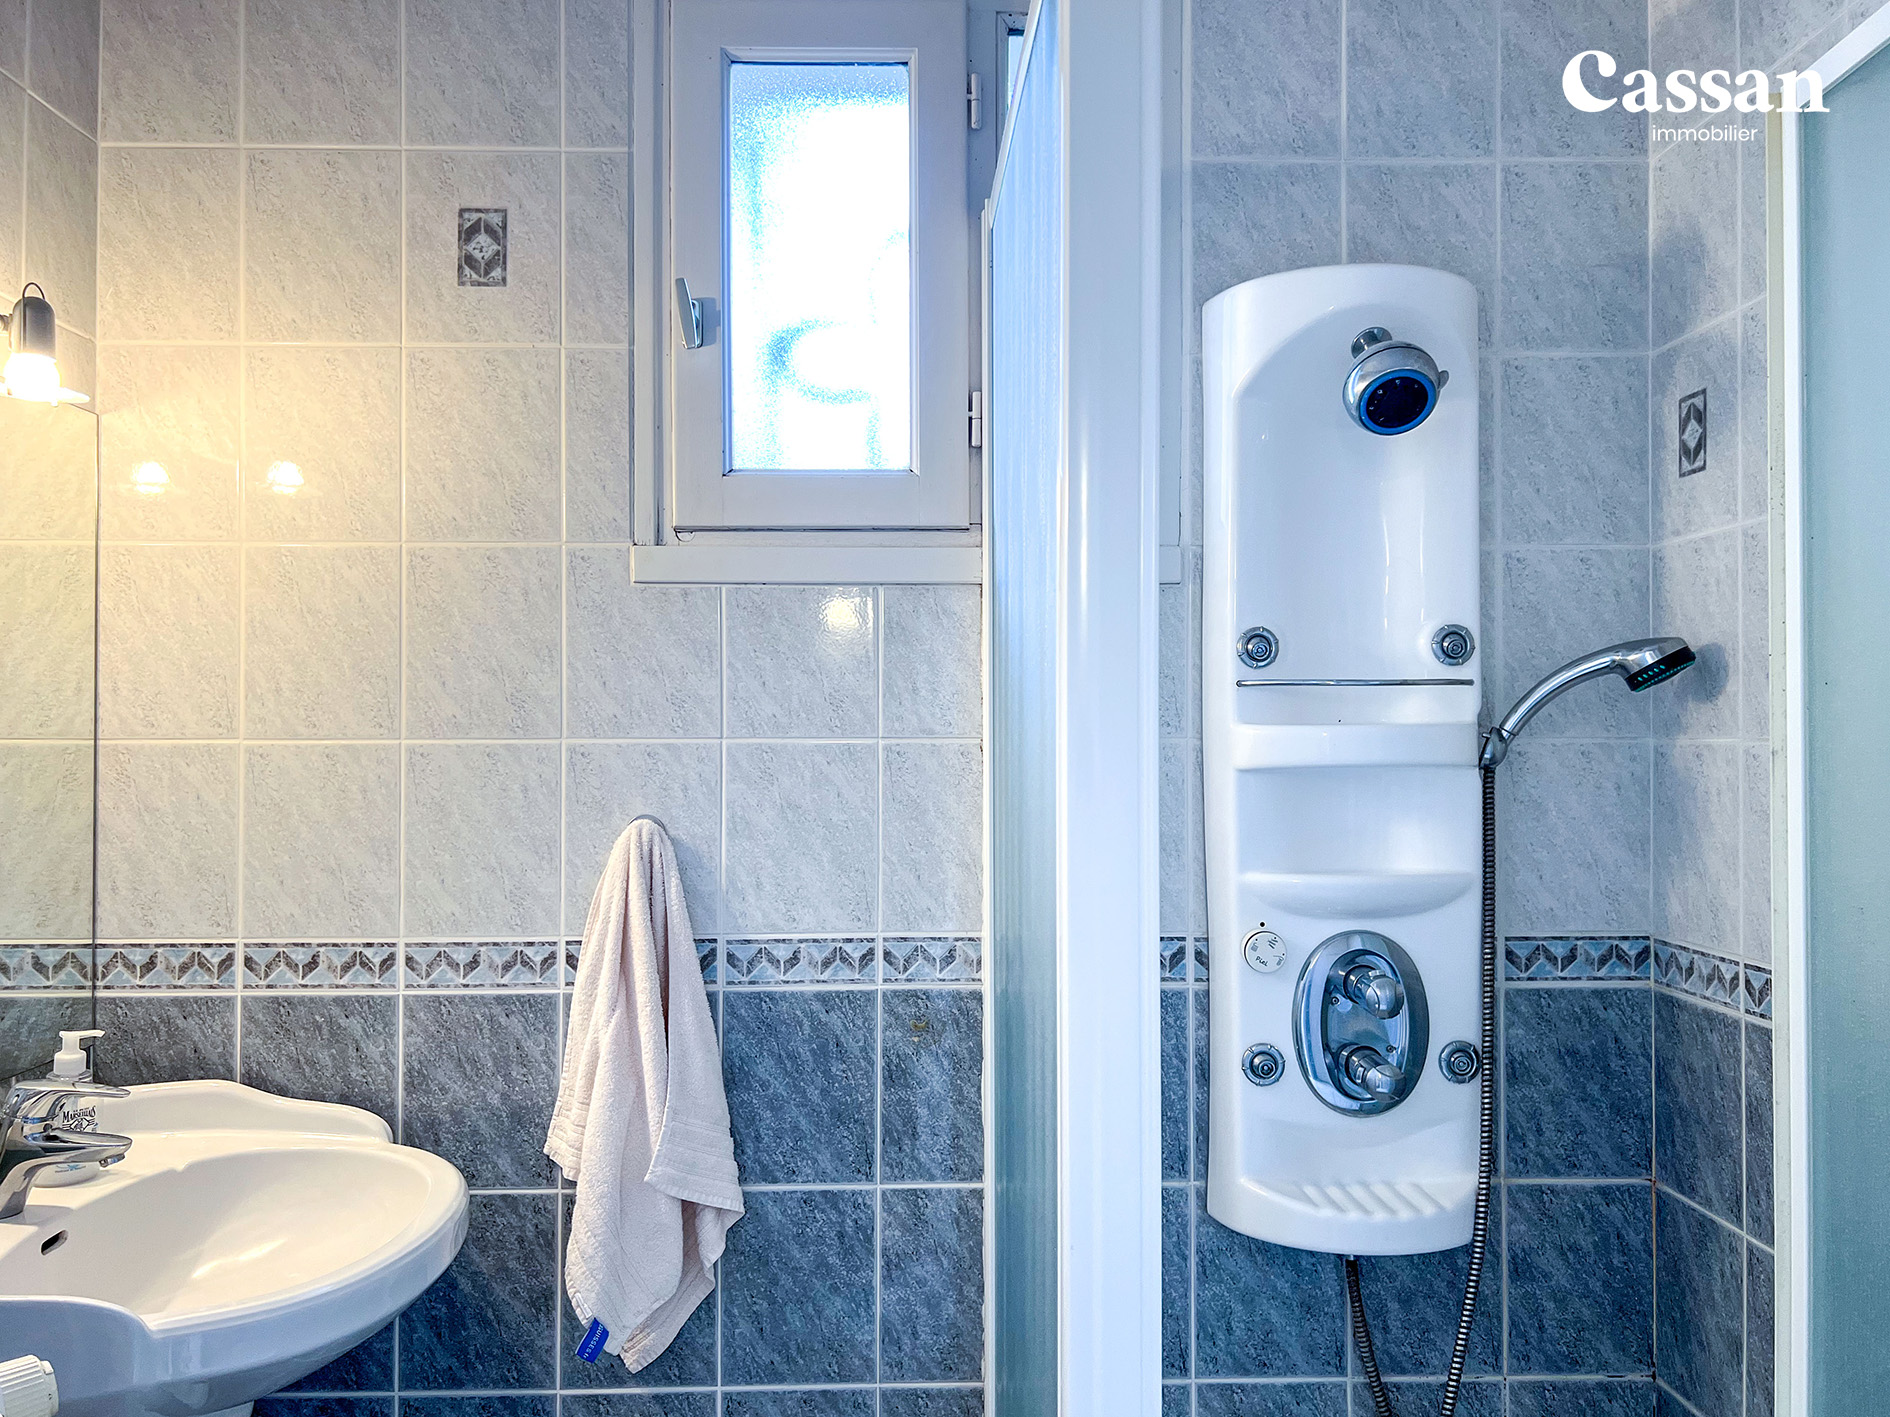 Salle de bain maison à vendre Sansac-de-Marmiesse Cassan immobilier